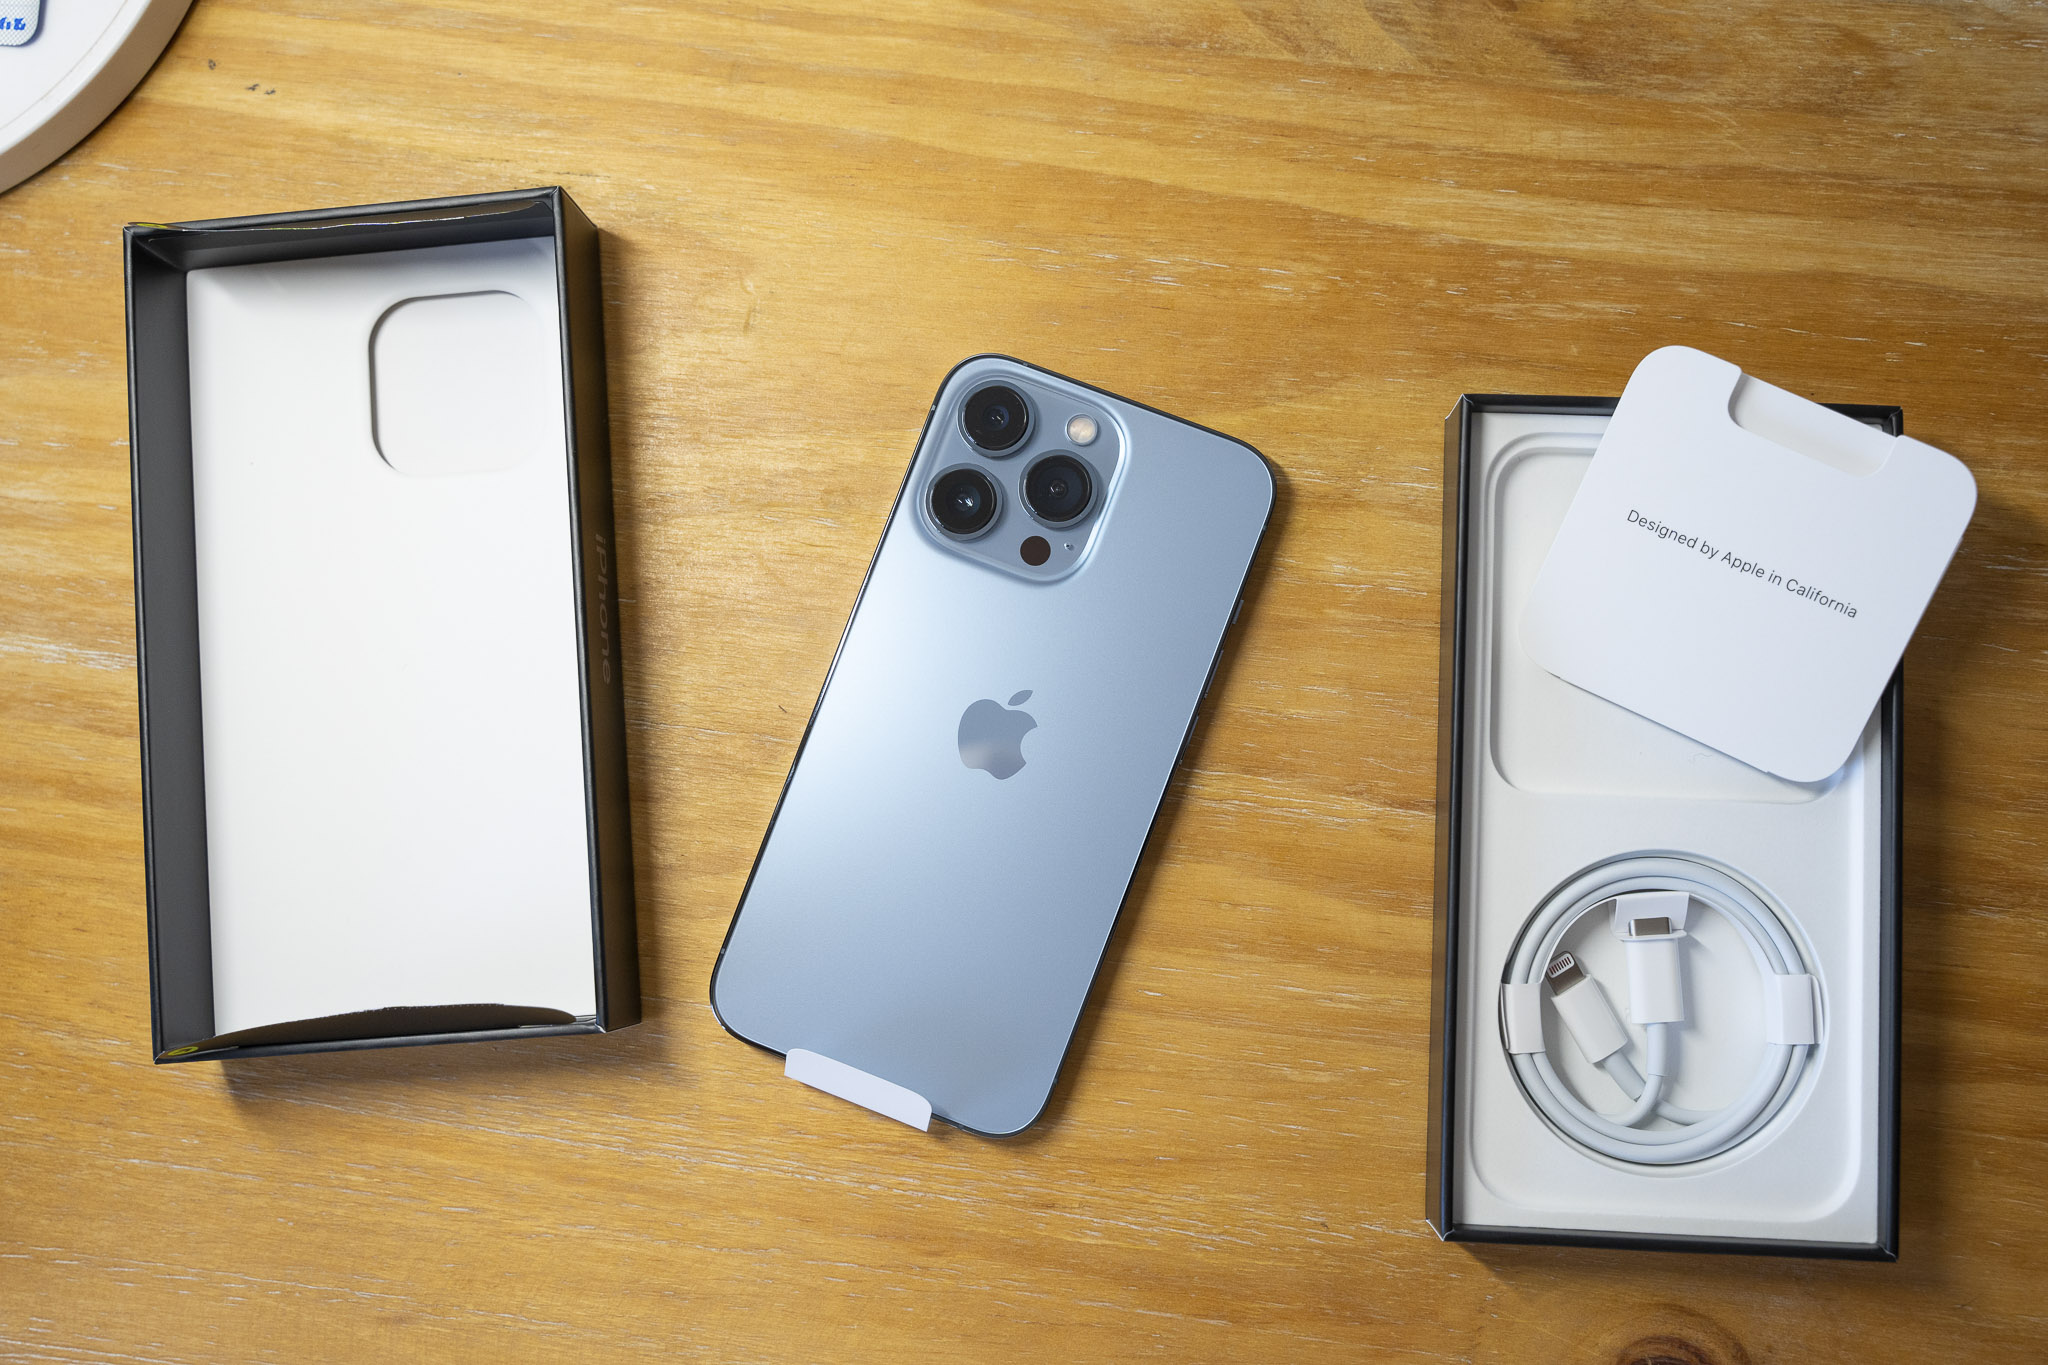 Khui hộp: Việc khui hộp sản phẩm mới là một trải nghiệm hào hứng đối với mọi người, đặc biệt là khi đó là iPhone 13 Pro Max. Hình ảnh liên quan có thể cho bạn cái nhìn chân thật và tình cảm hơn về việc khui hộp và khám phá toàn bộ nội dung bên trong.